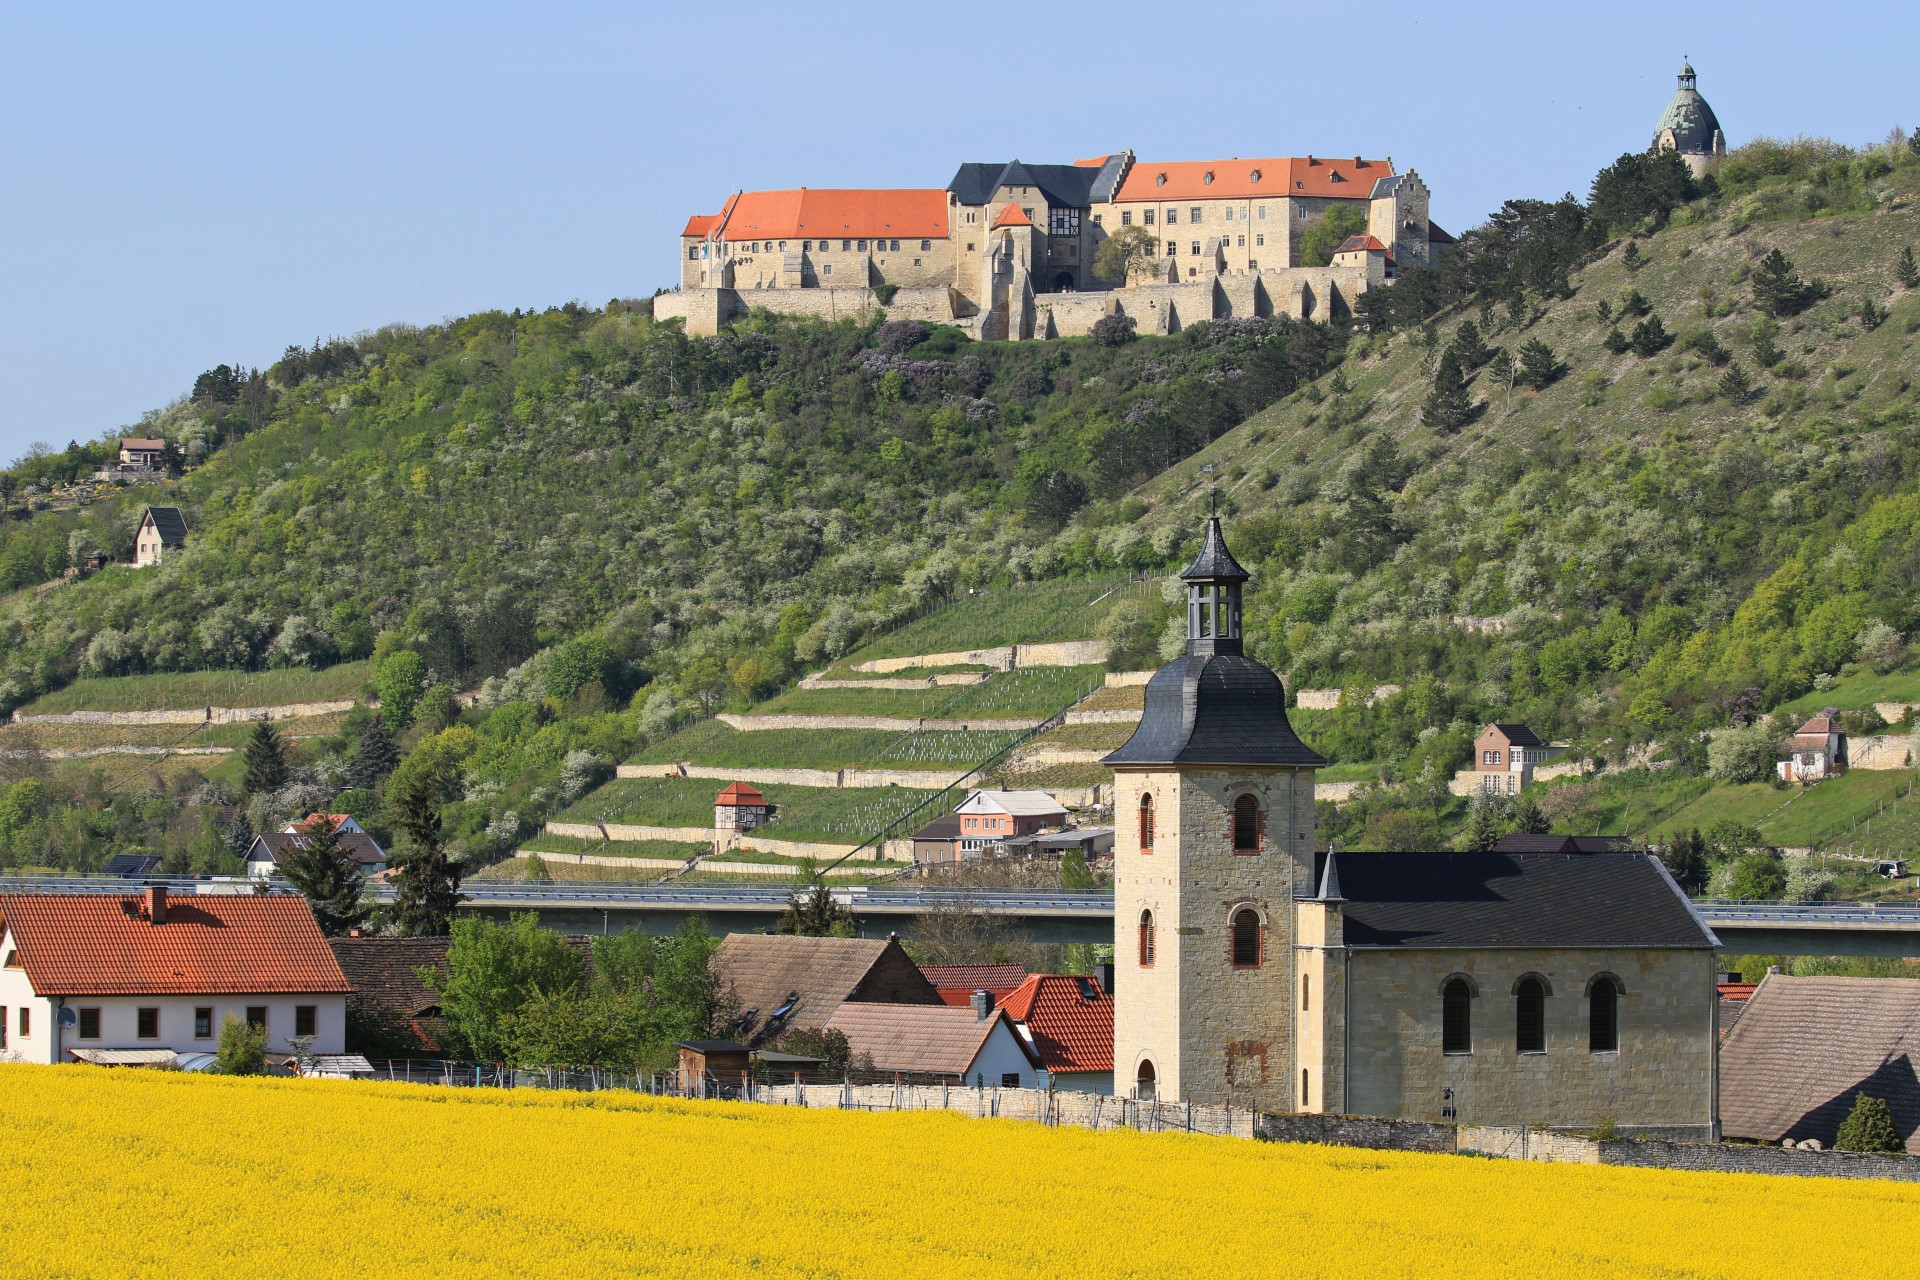 Blick zum Schloss Neuenburg. Photo Credit: Kora27, CC BY-SA 4.0